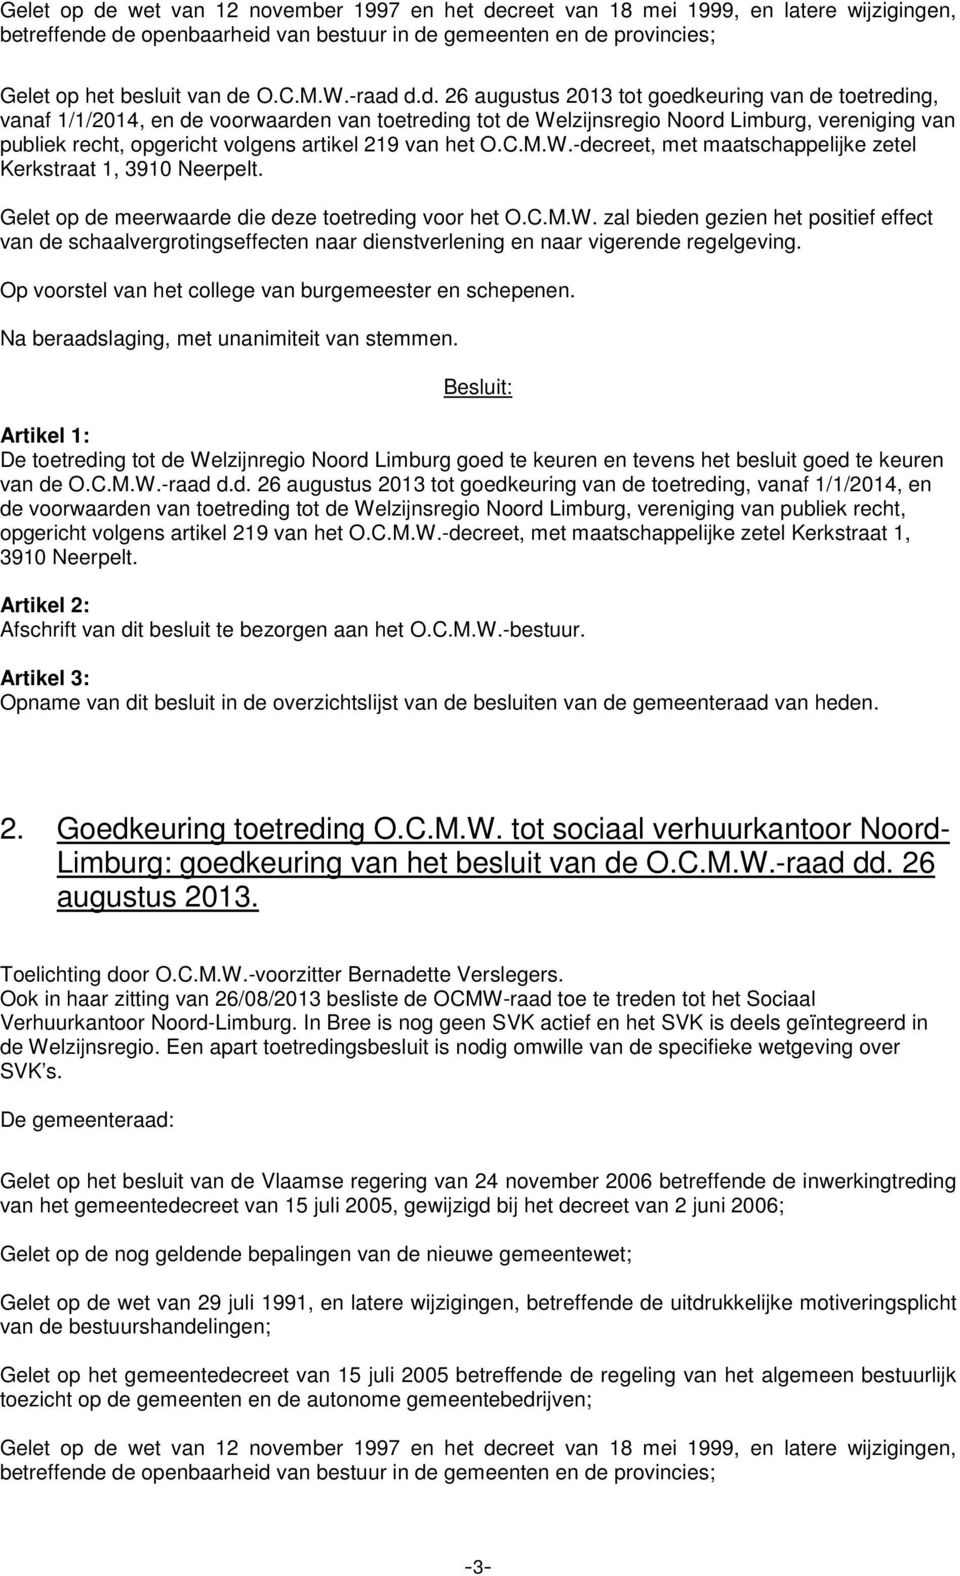 d.d. 26 augustus 2013 tot goedkeuring van de toetreding, vanaf 1/1/2014, en de voorwaarden van toetreding tot de Welzijnsregio Noord Limburg, vereniging van publiek recht, opgericht volgens artikel